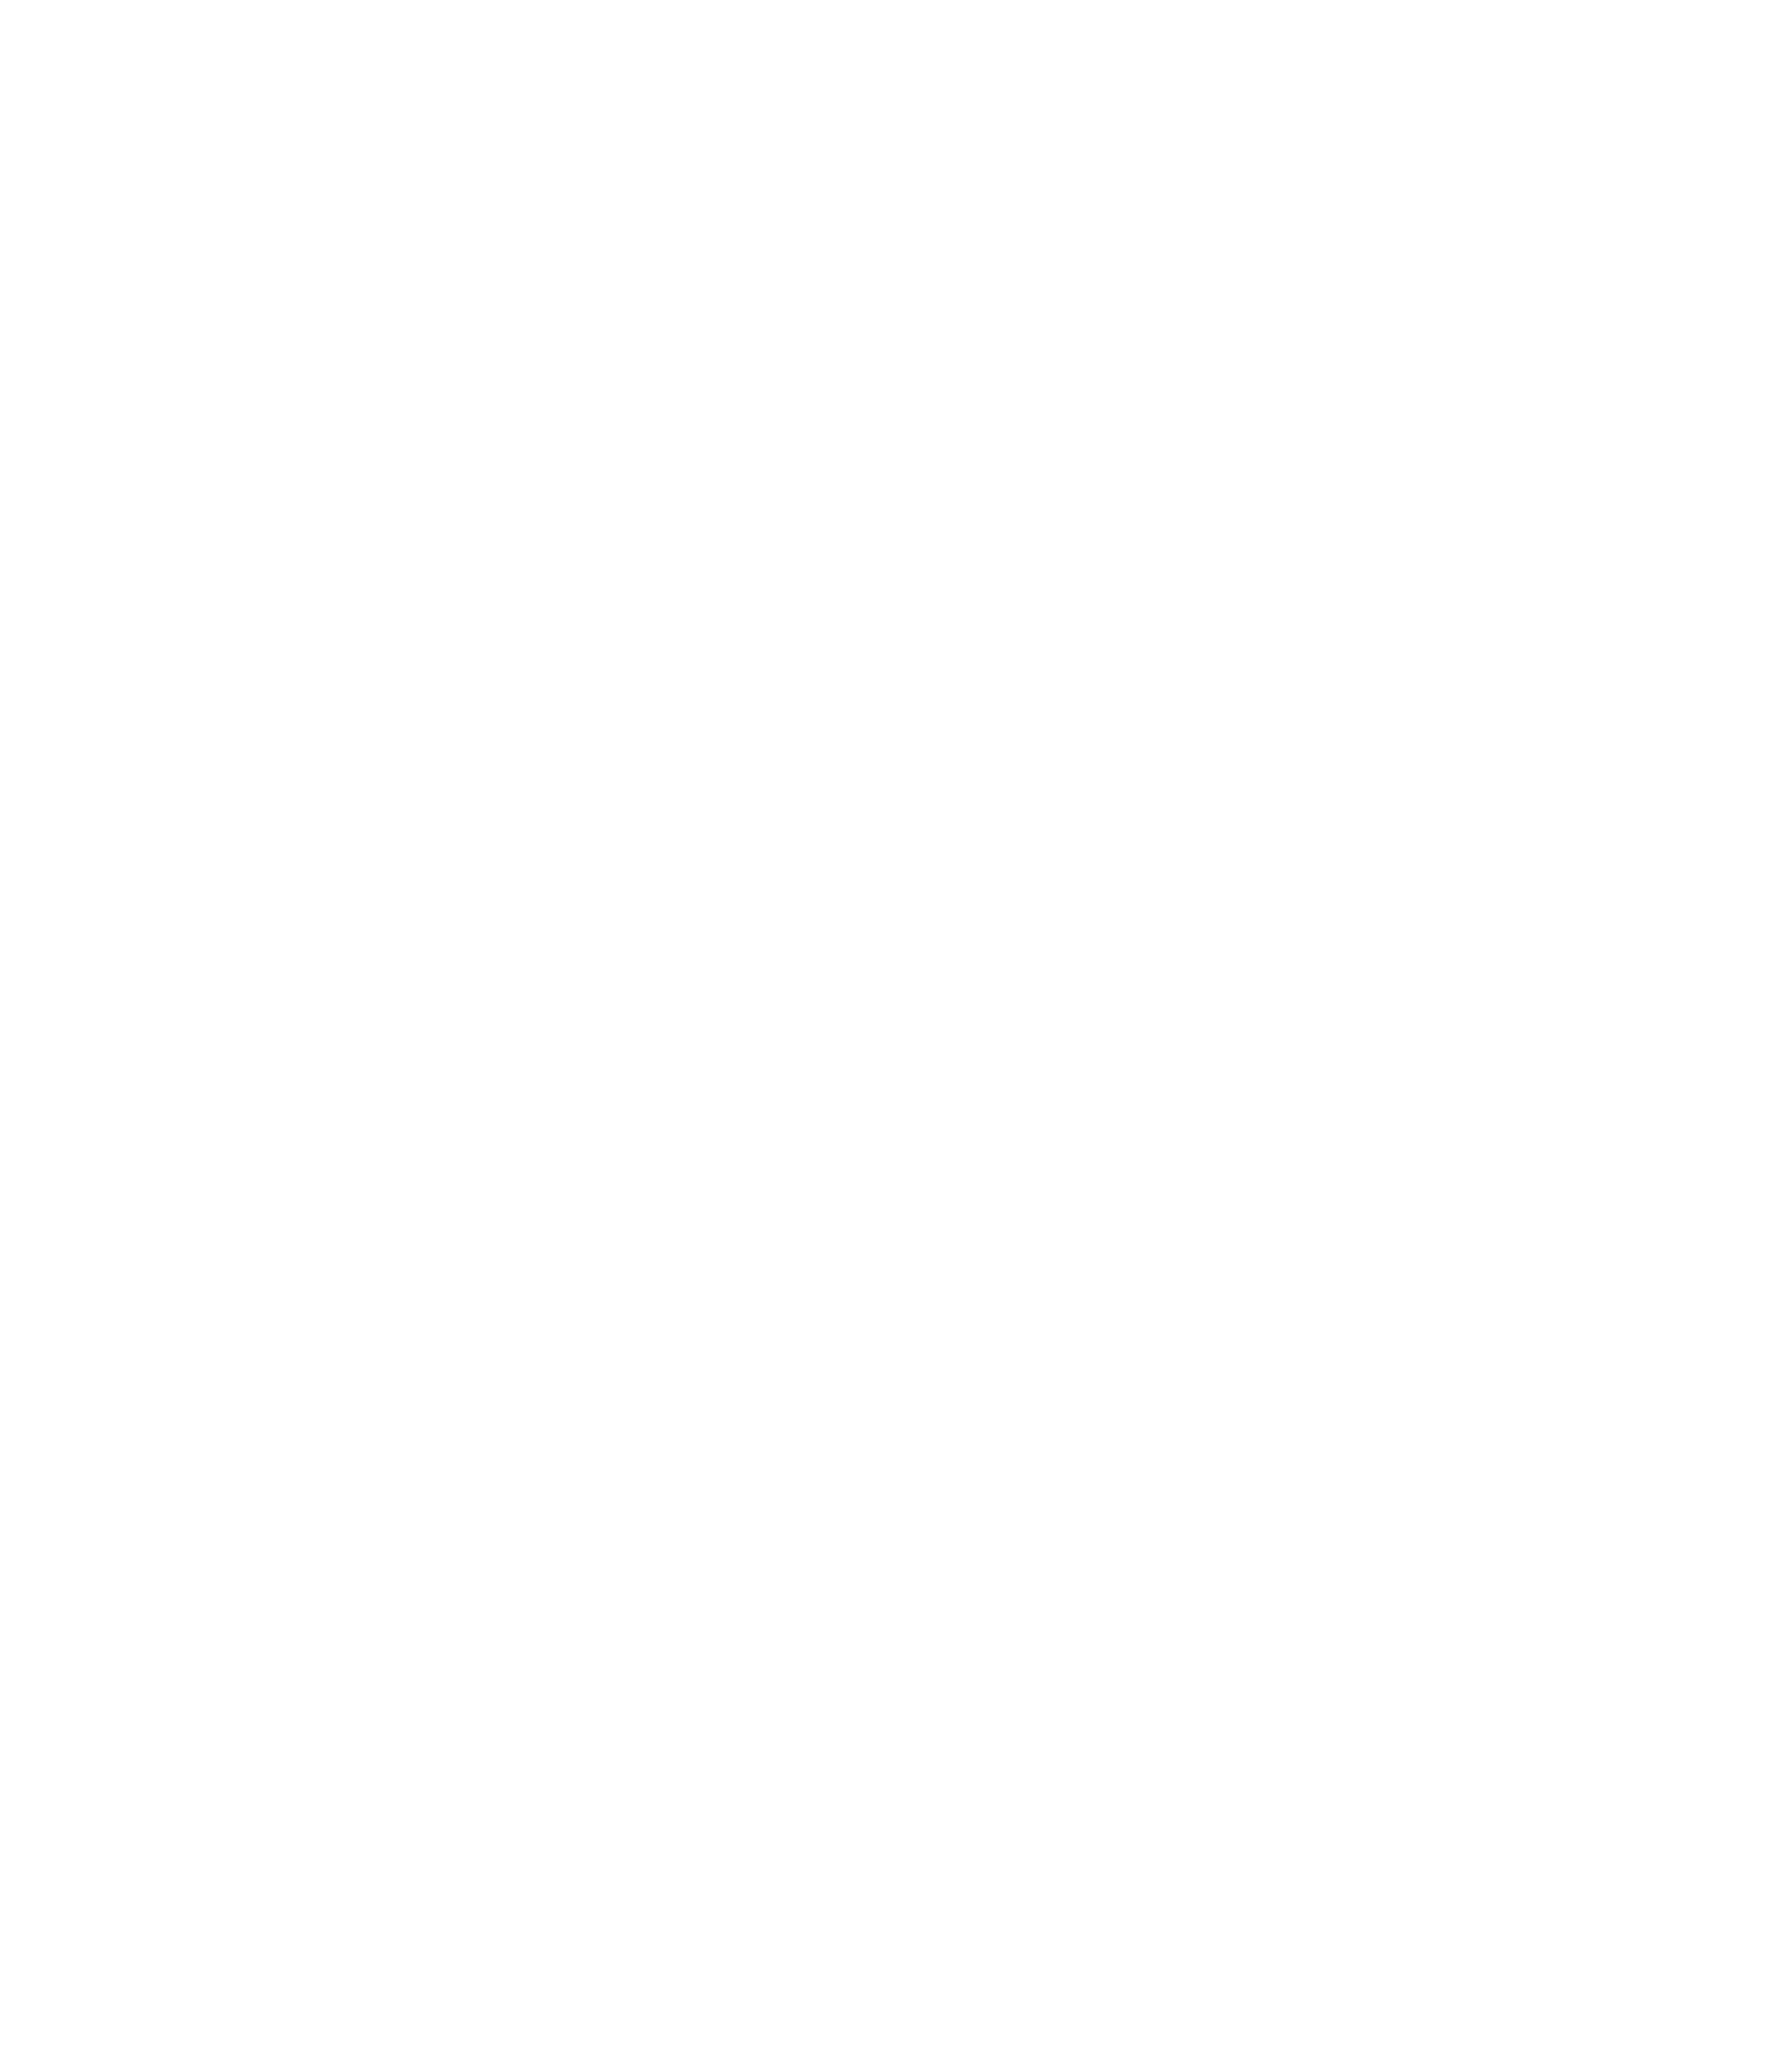 Twitch_logo